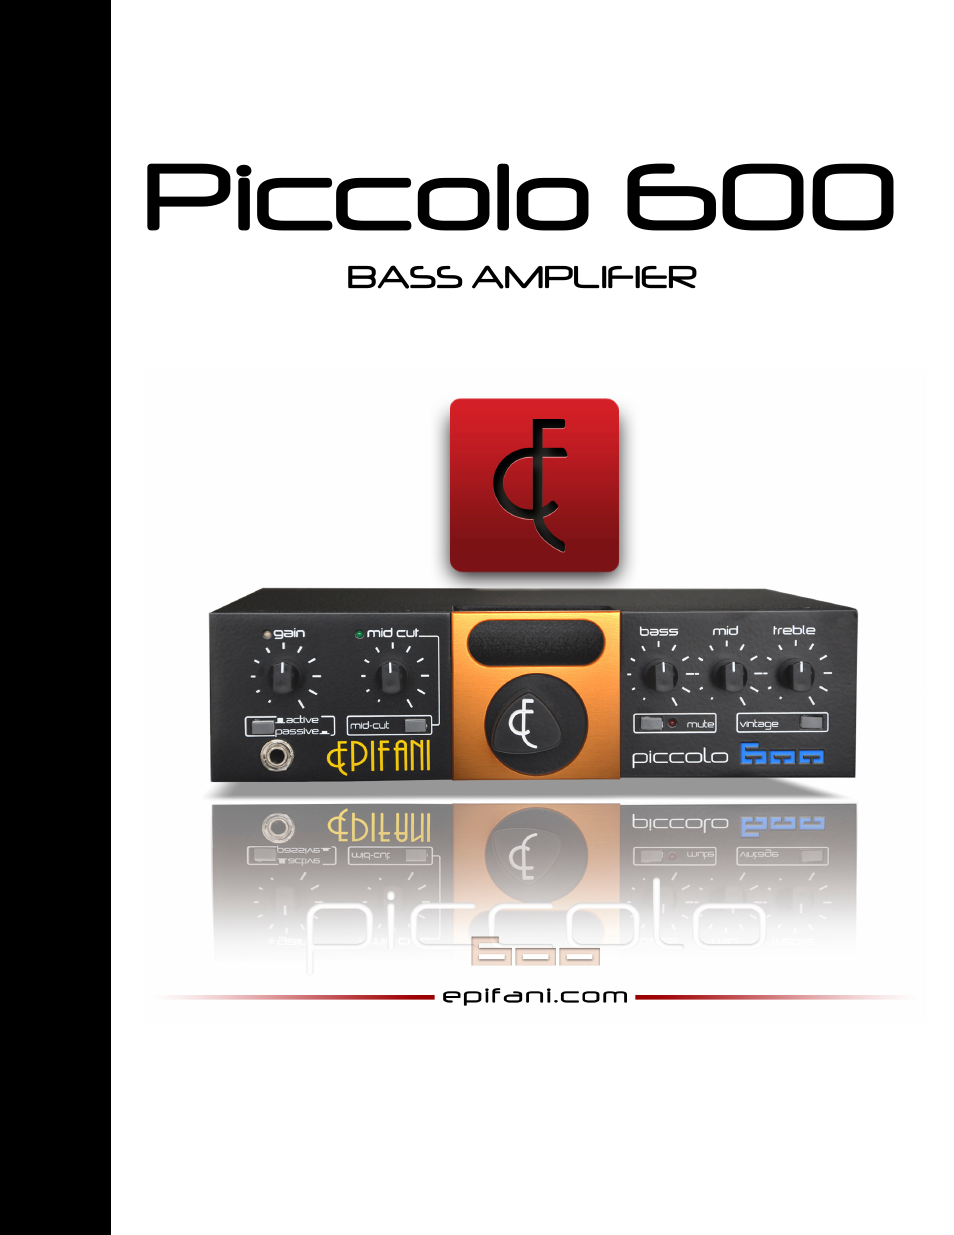 Piccolo 600 Amplifier